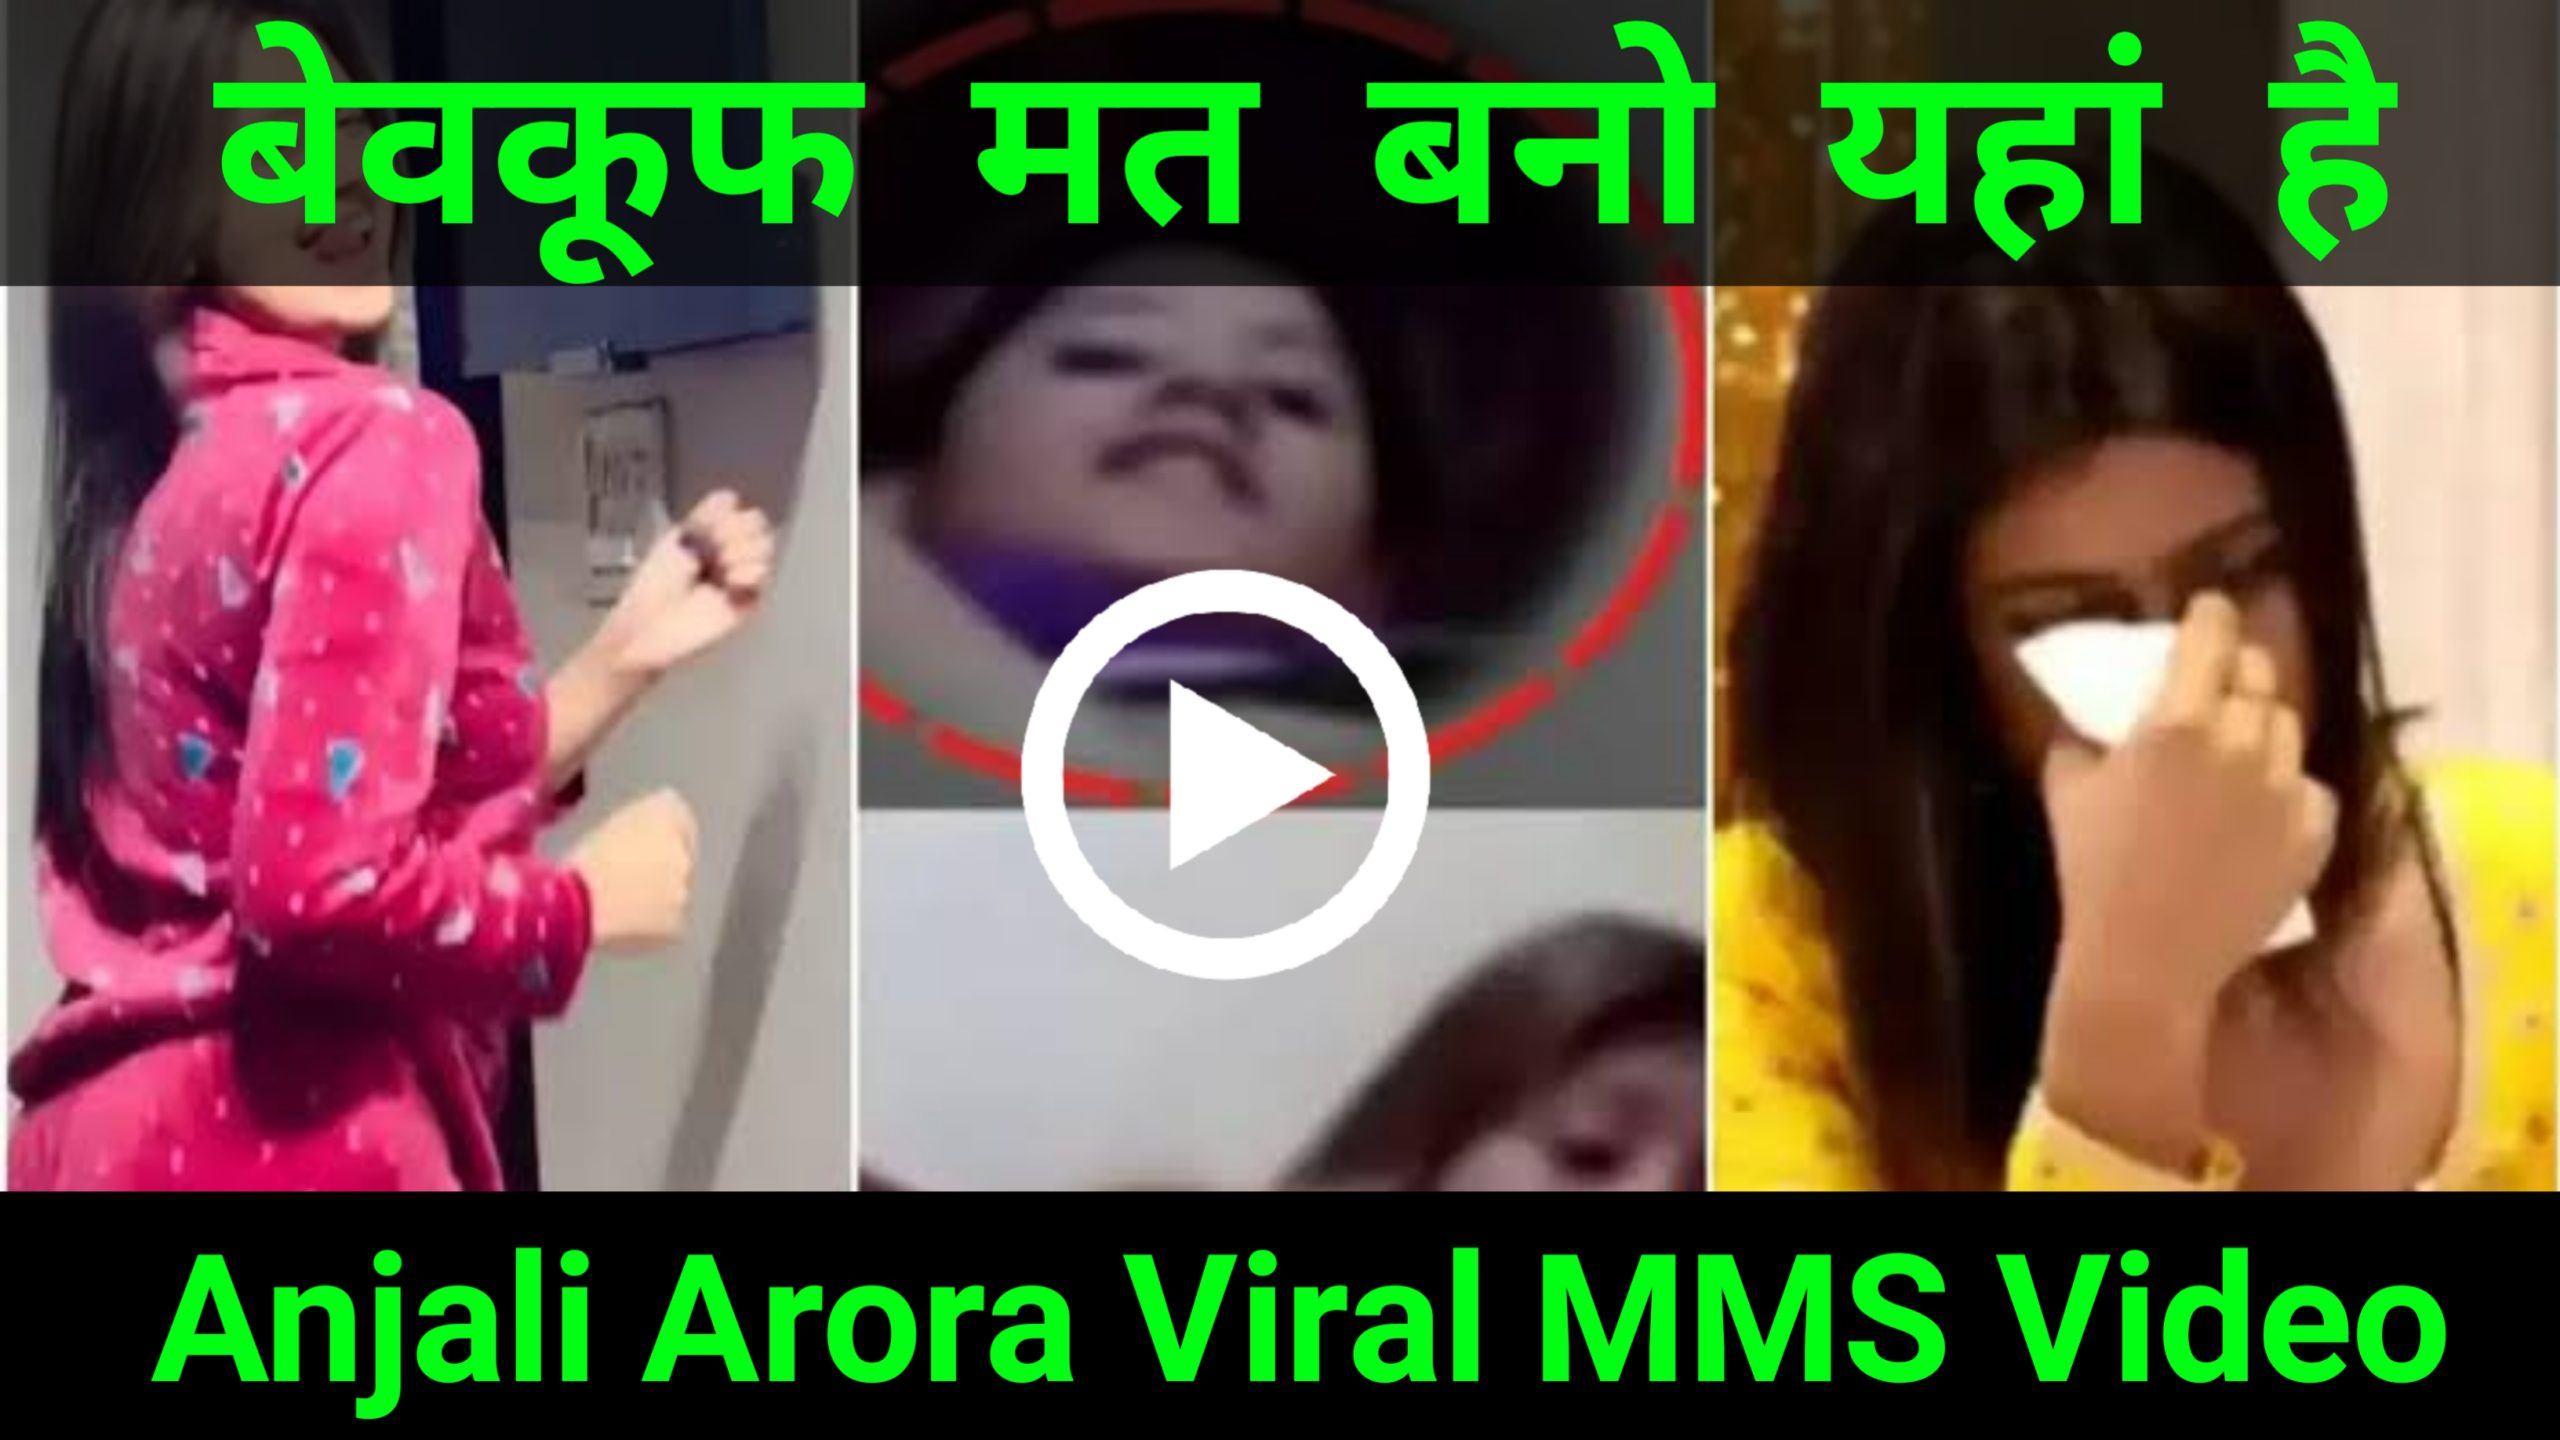 Anjali Arora viral MMS